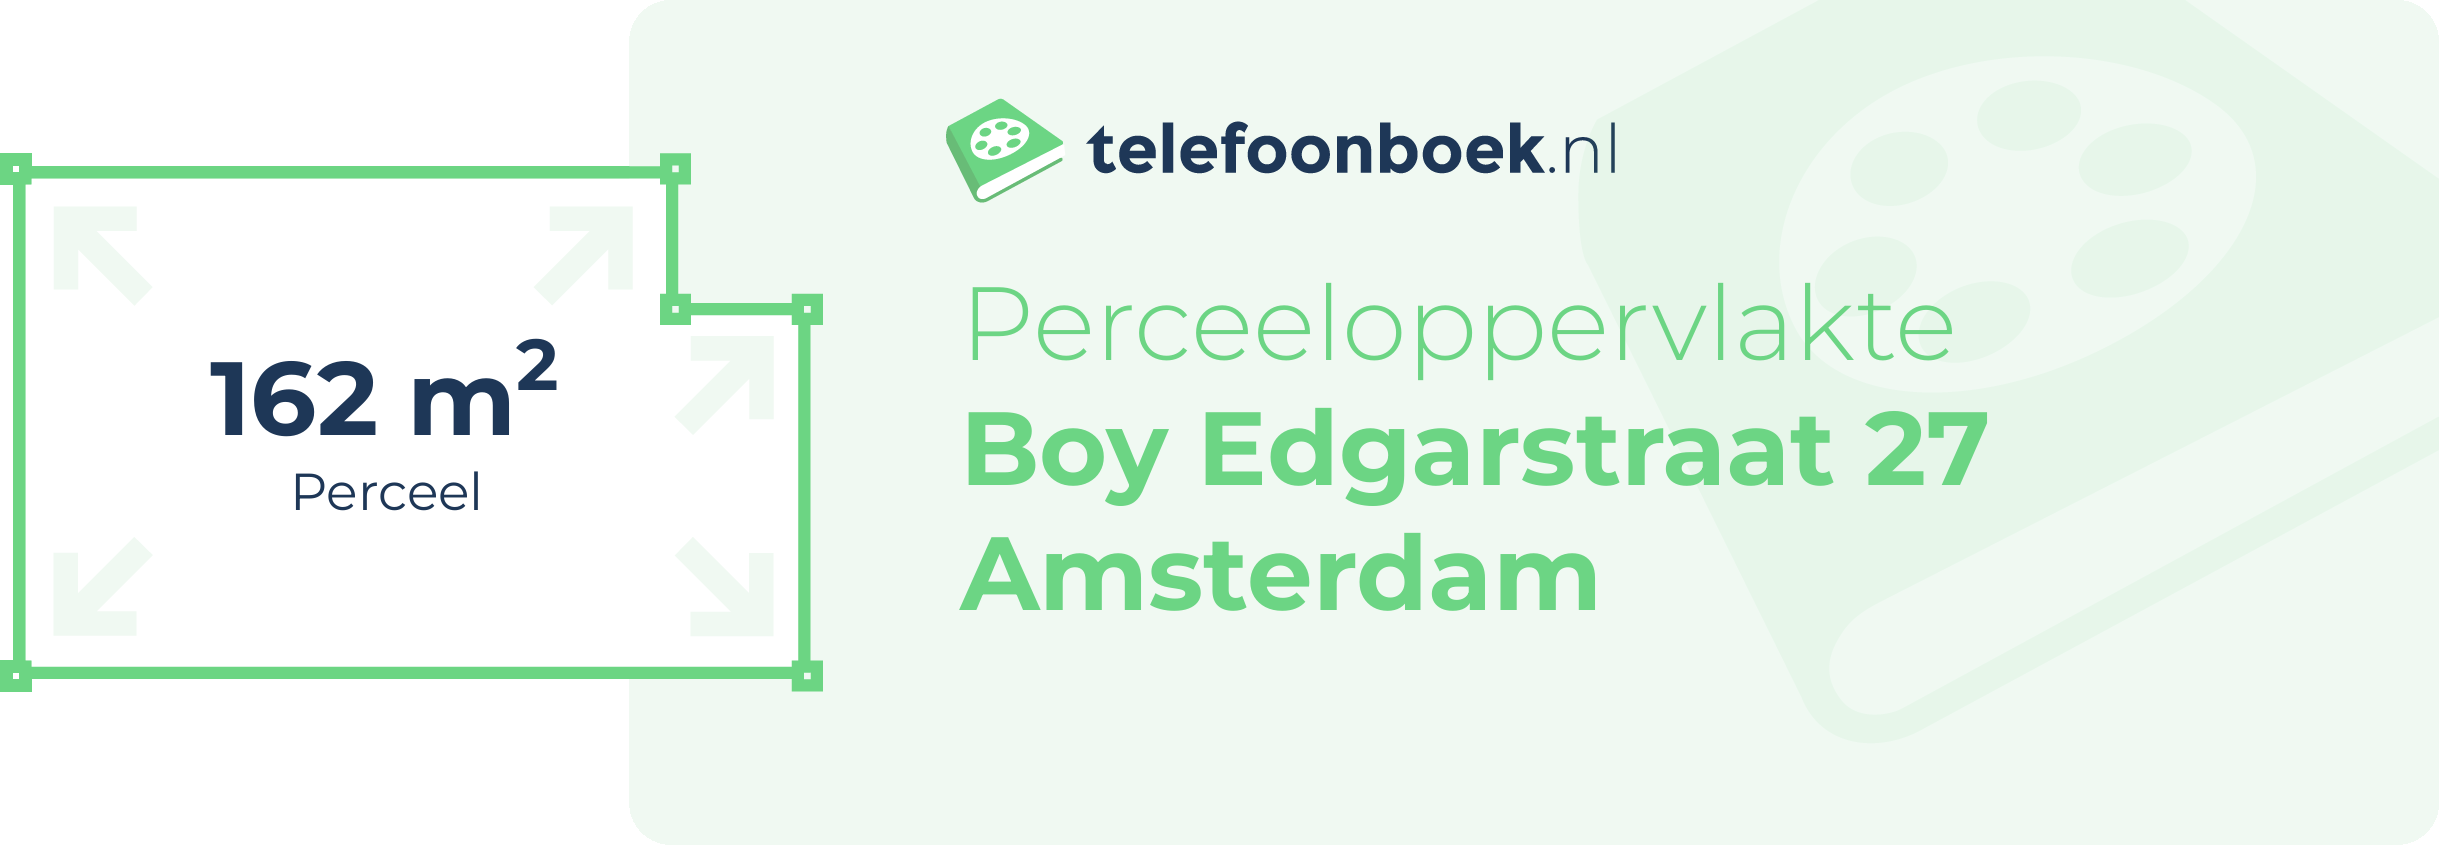 Perceeloppervlakte Boy Edgarstraat 27 Amsterdam